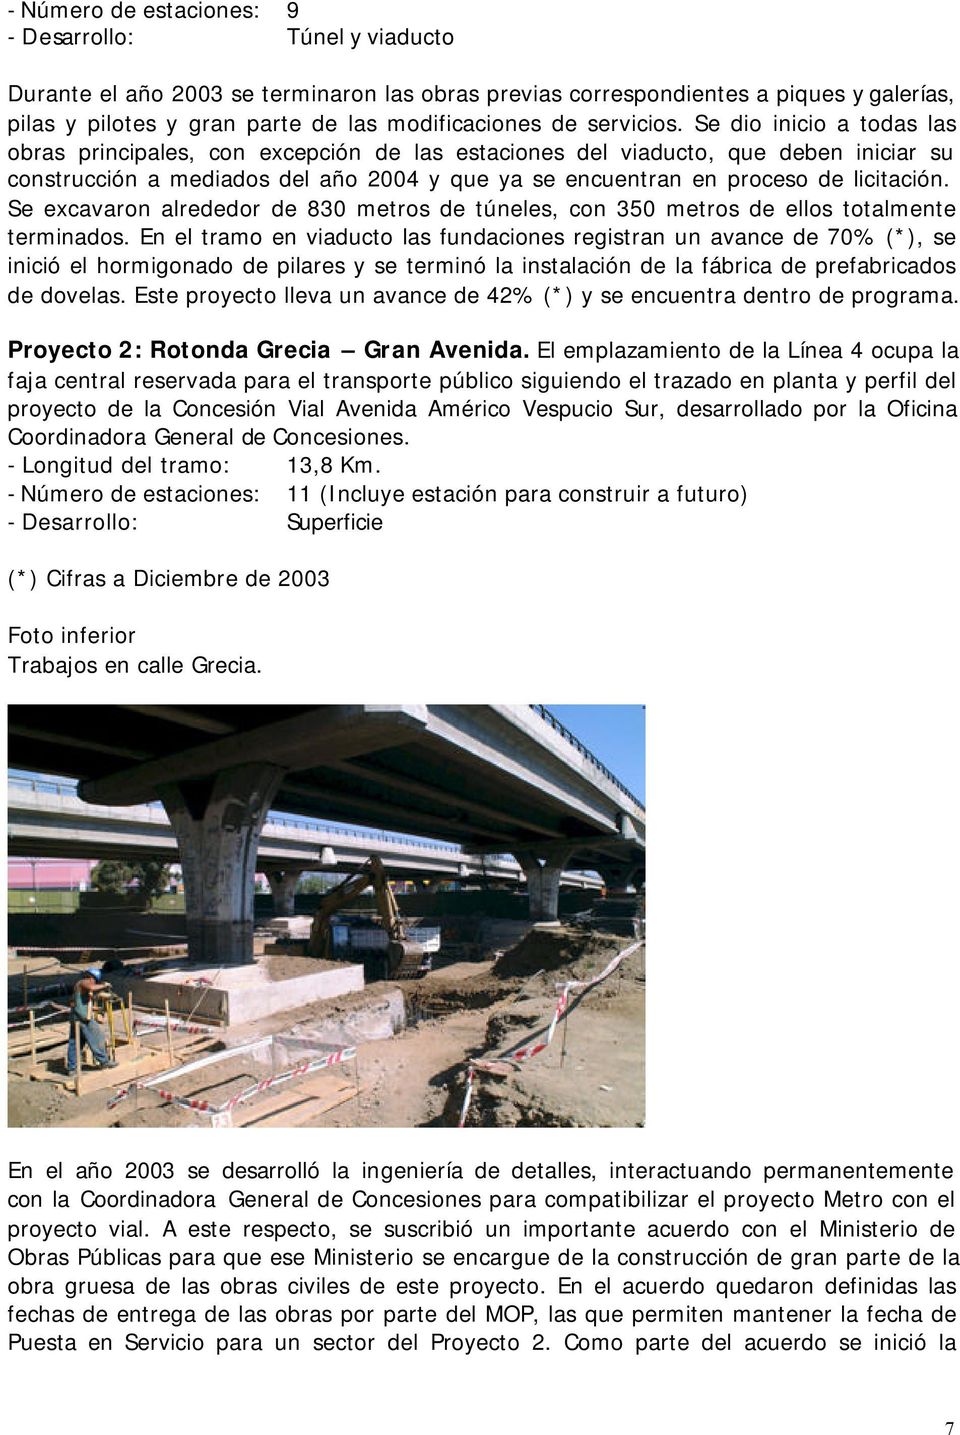 Se dio inicio a todas las obras principales, con excepción de las estaciones del viaducto, que deben iniciar su construcción a mediados del año 2004 y que ya se encuentran en proceso de licitación.